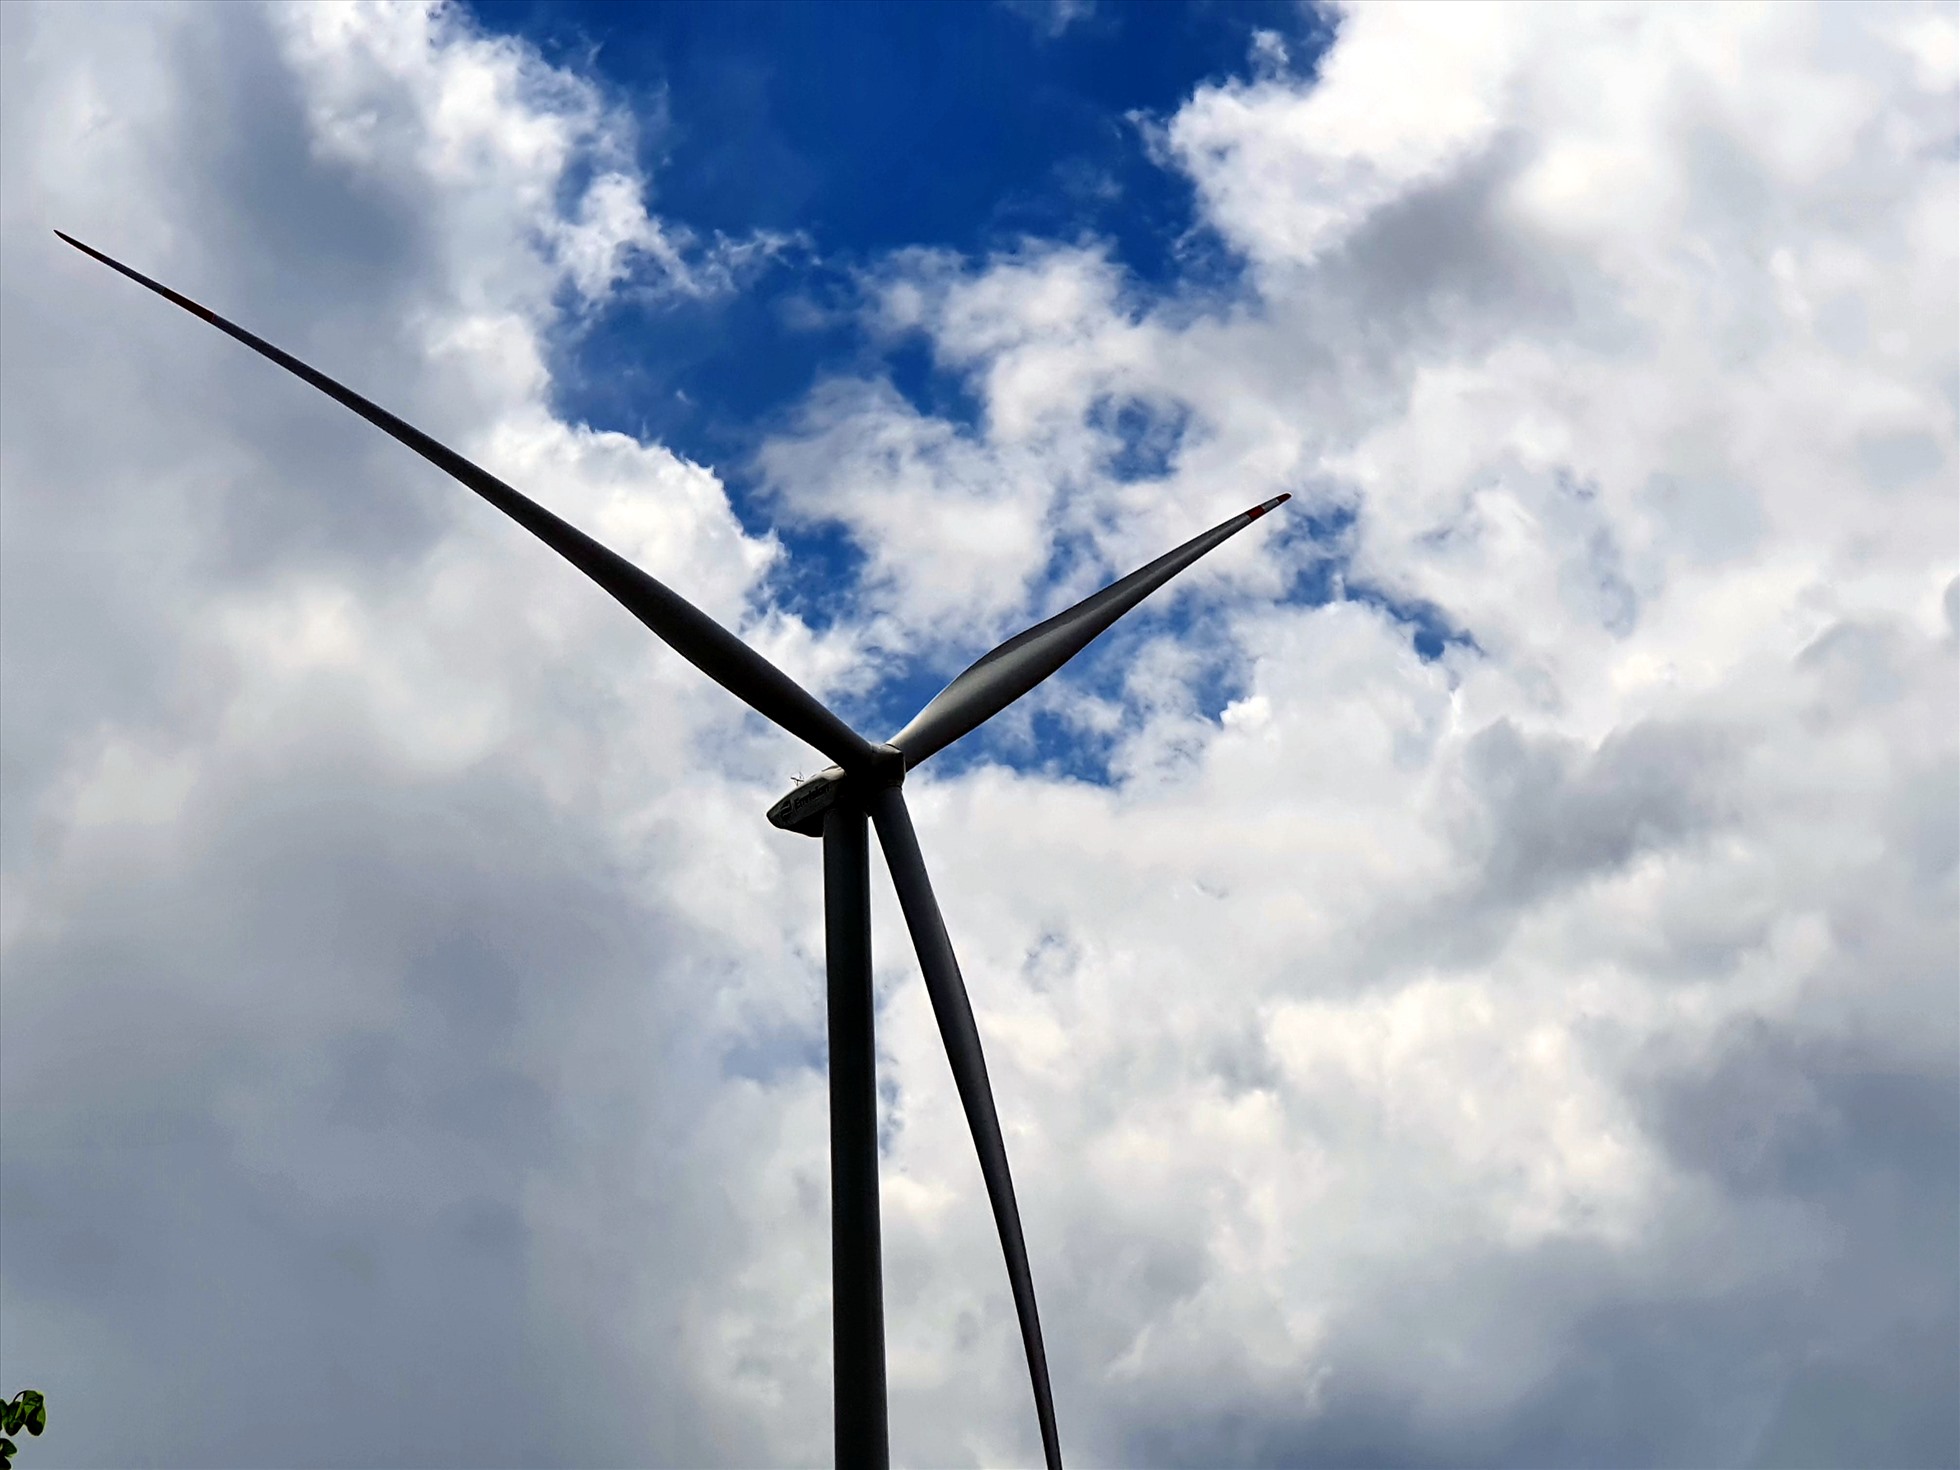 Những buabin gió của dự án điện gió Hacom đầu tư có chiều cao 140 m. Đây là dự án điện gió trong bờ đầu tiên tại ĐBSCL.